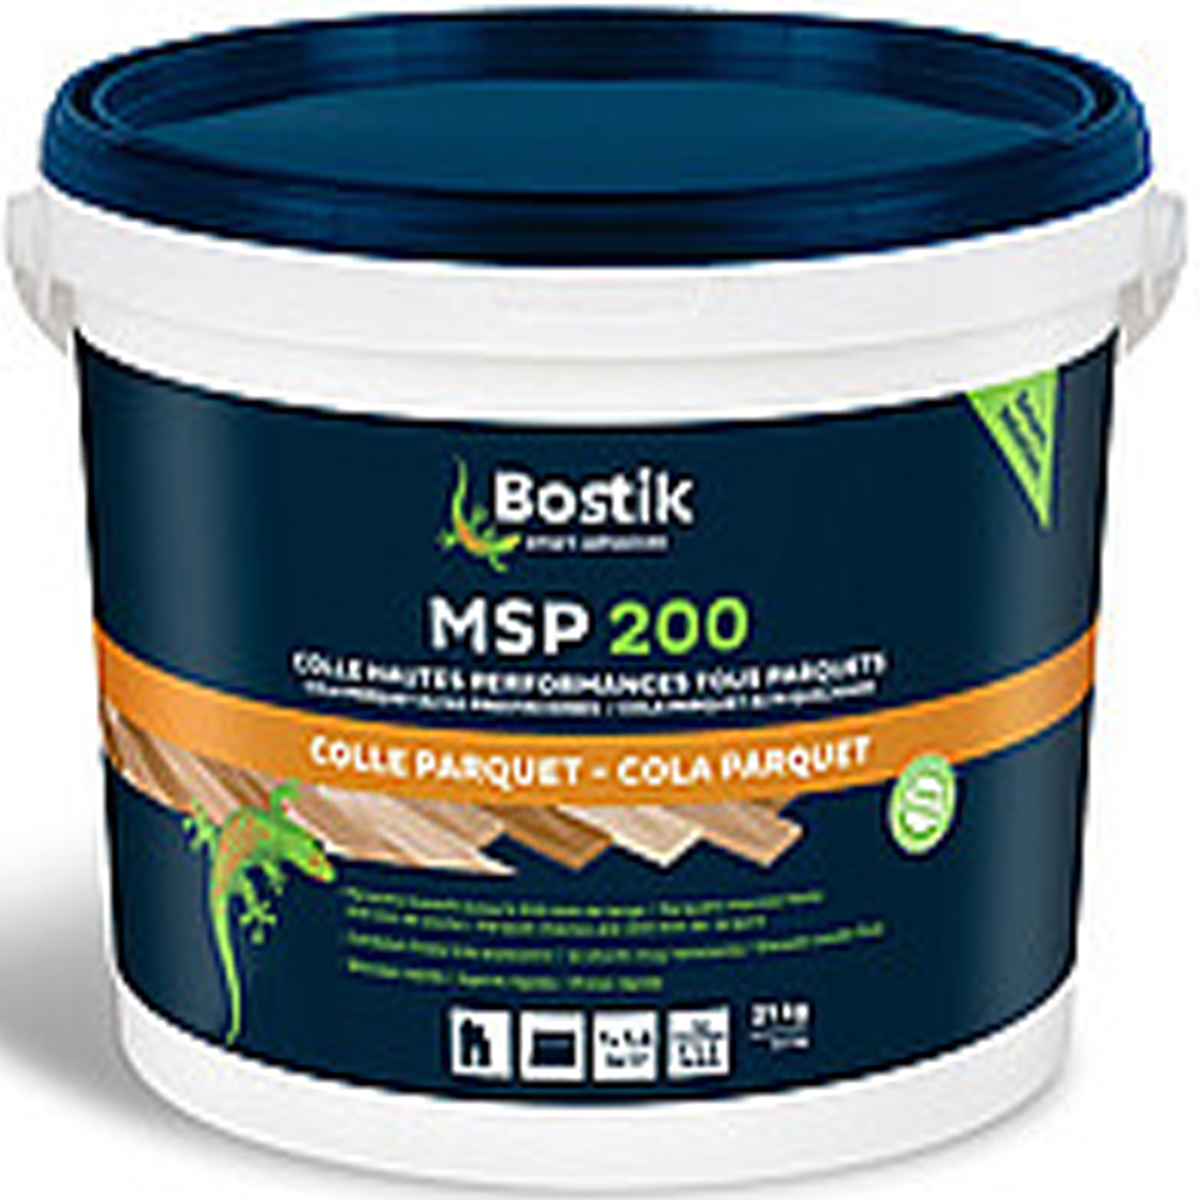 Bostik MSP 200 мс-полимерный клей д/паркета